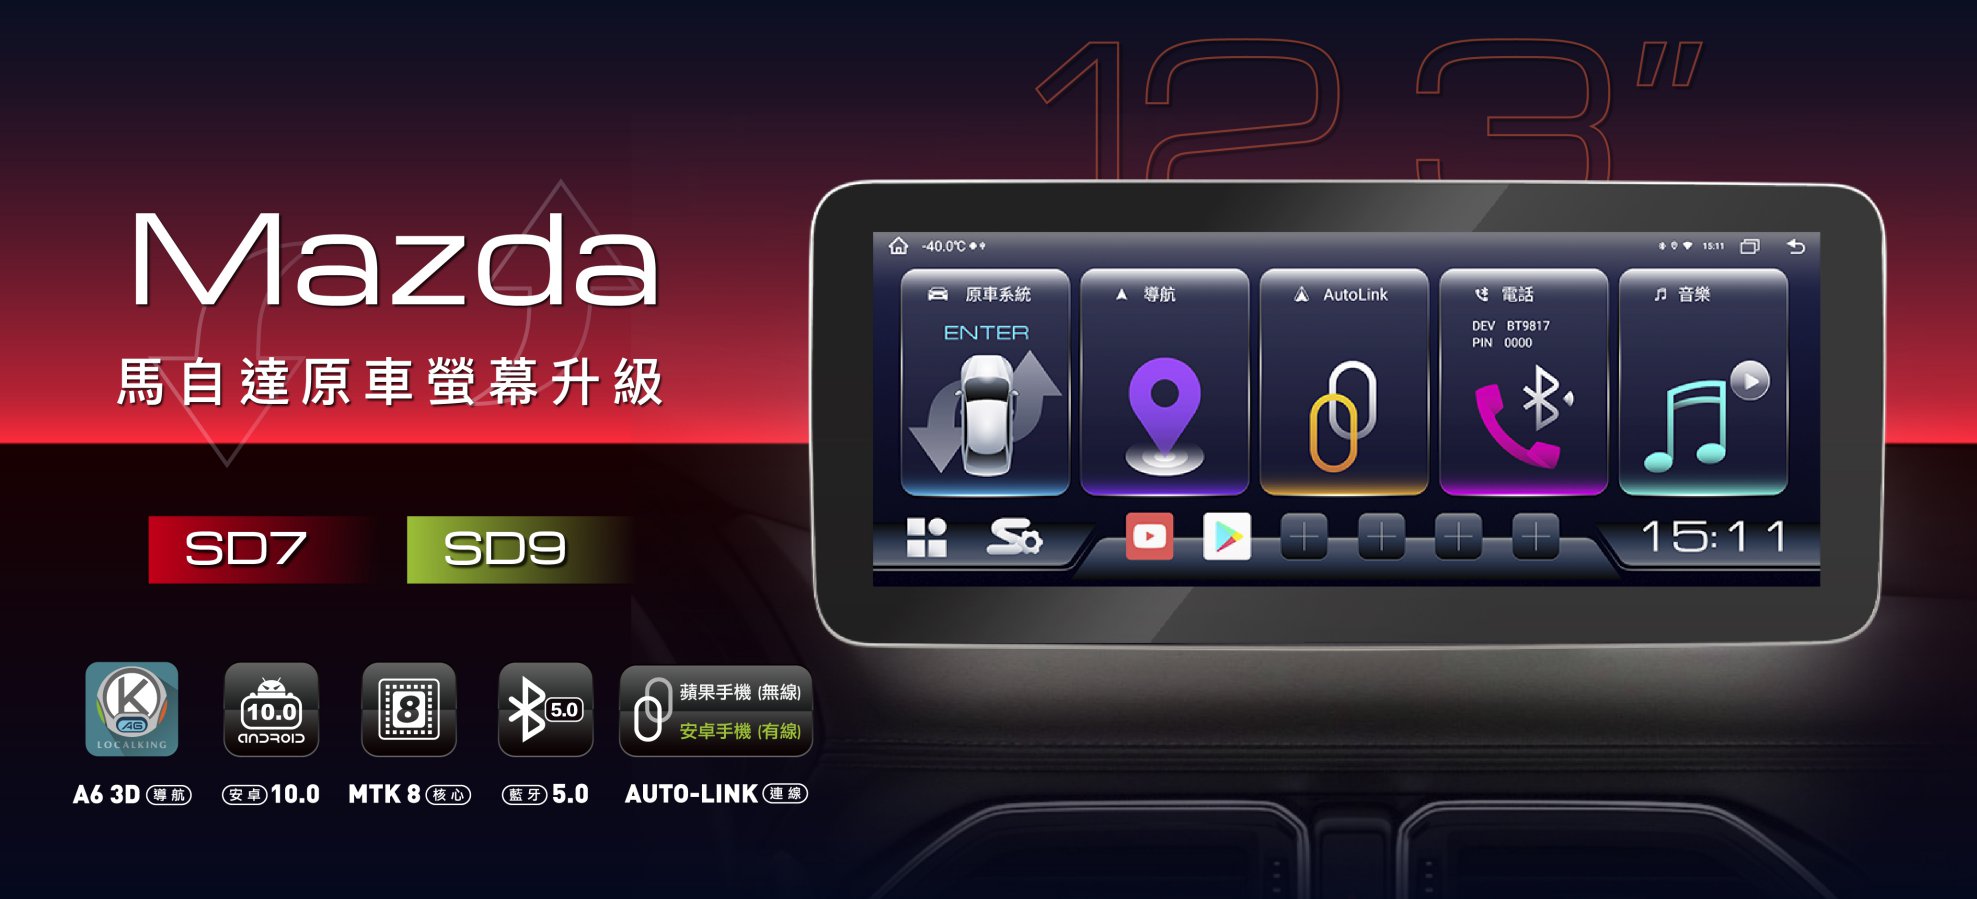 MAZDA 換屏升級12.3吋大螢幕車機